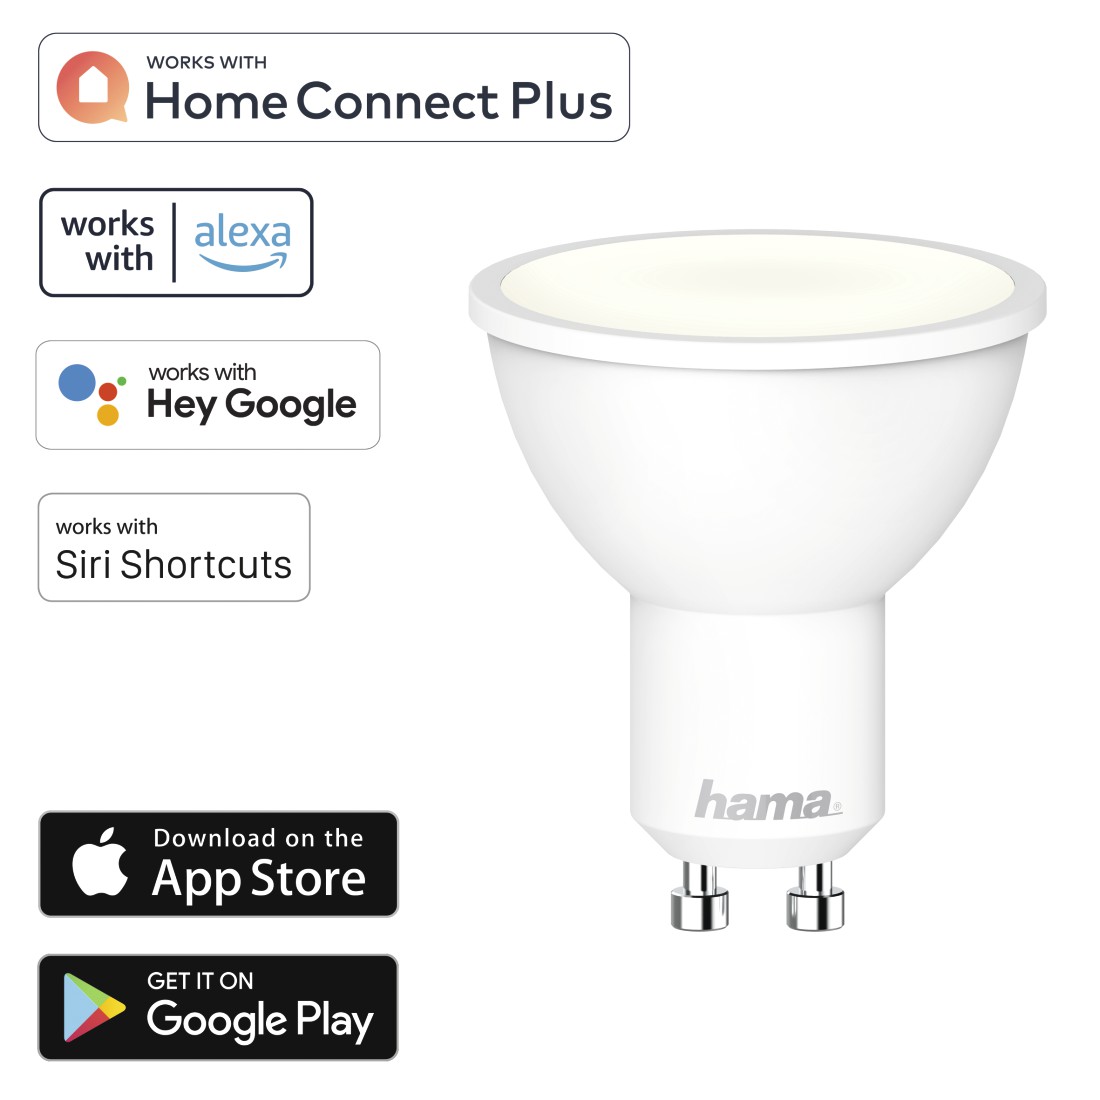 WLAN-LED-Lampe, GU10, 5,5W, dimmbar, Refl., für Sprach-/App-Steuerung, Weiß  | Hama